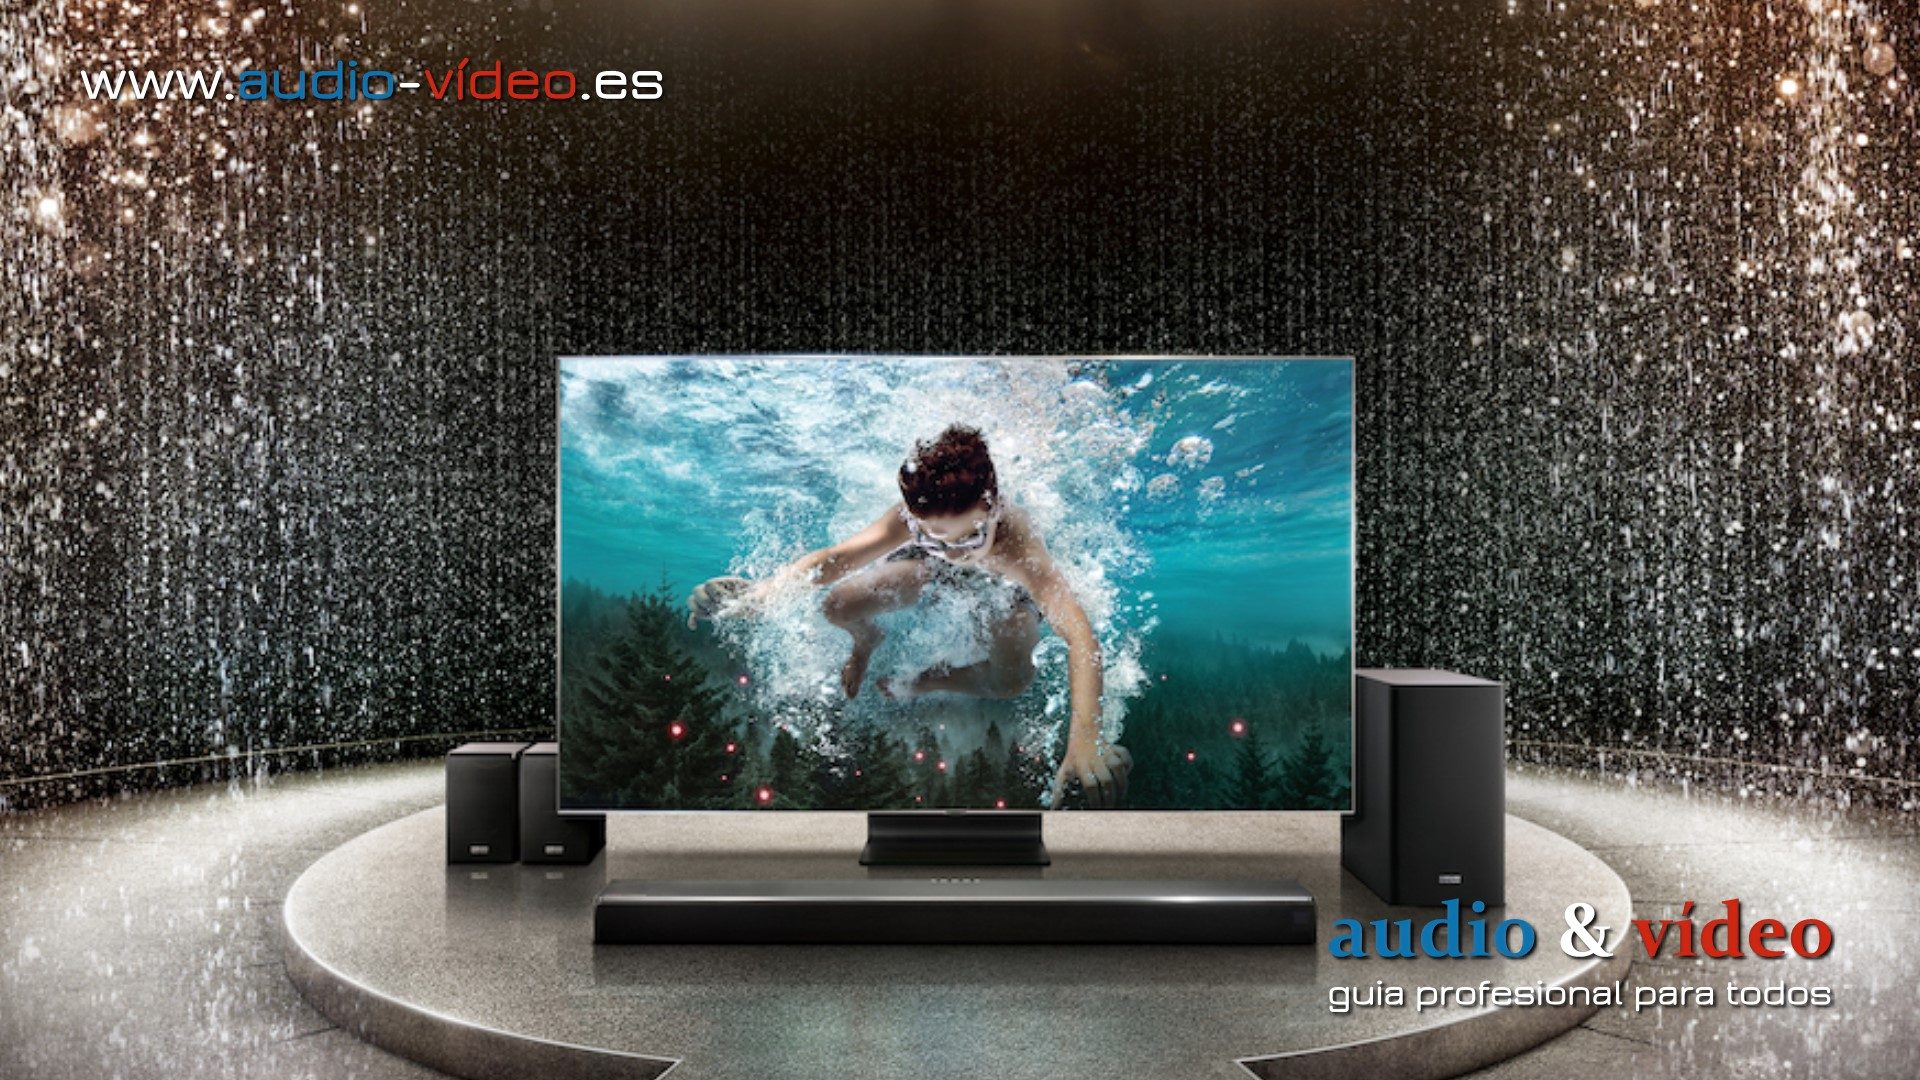 Se espera que Samsung presente en CES 2020 la tecnología Samsung Symphony TV para mejorar el sonido de sus próximos televisores 8K QLED.